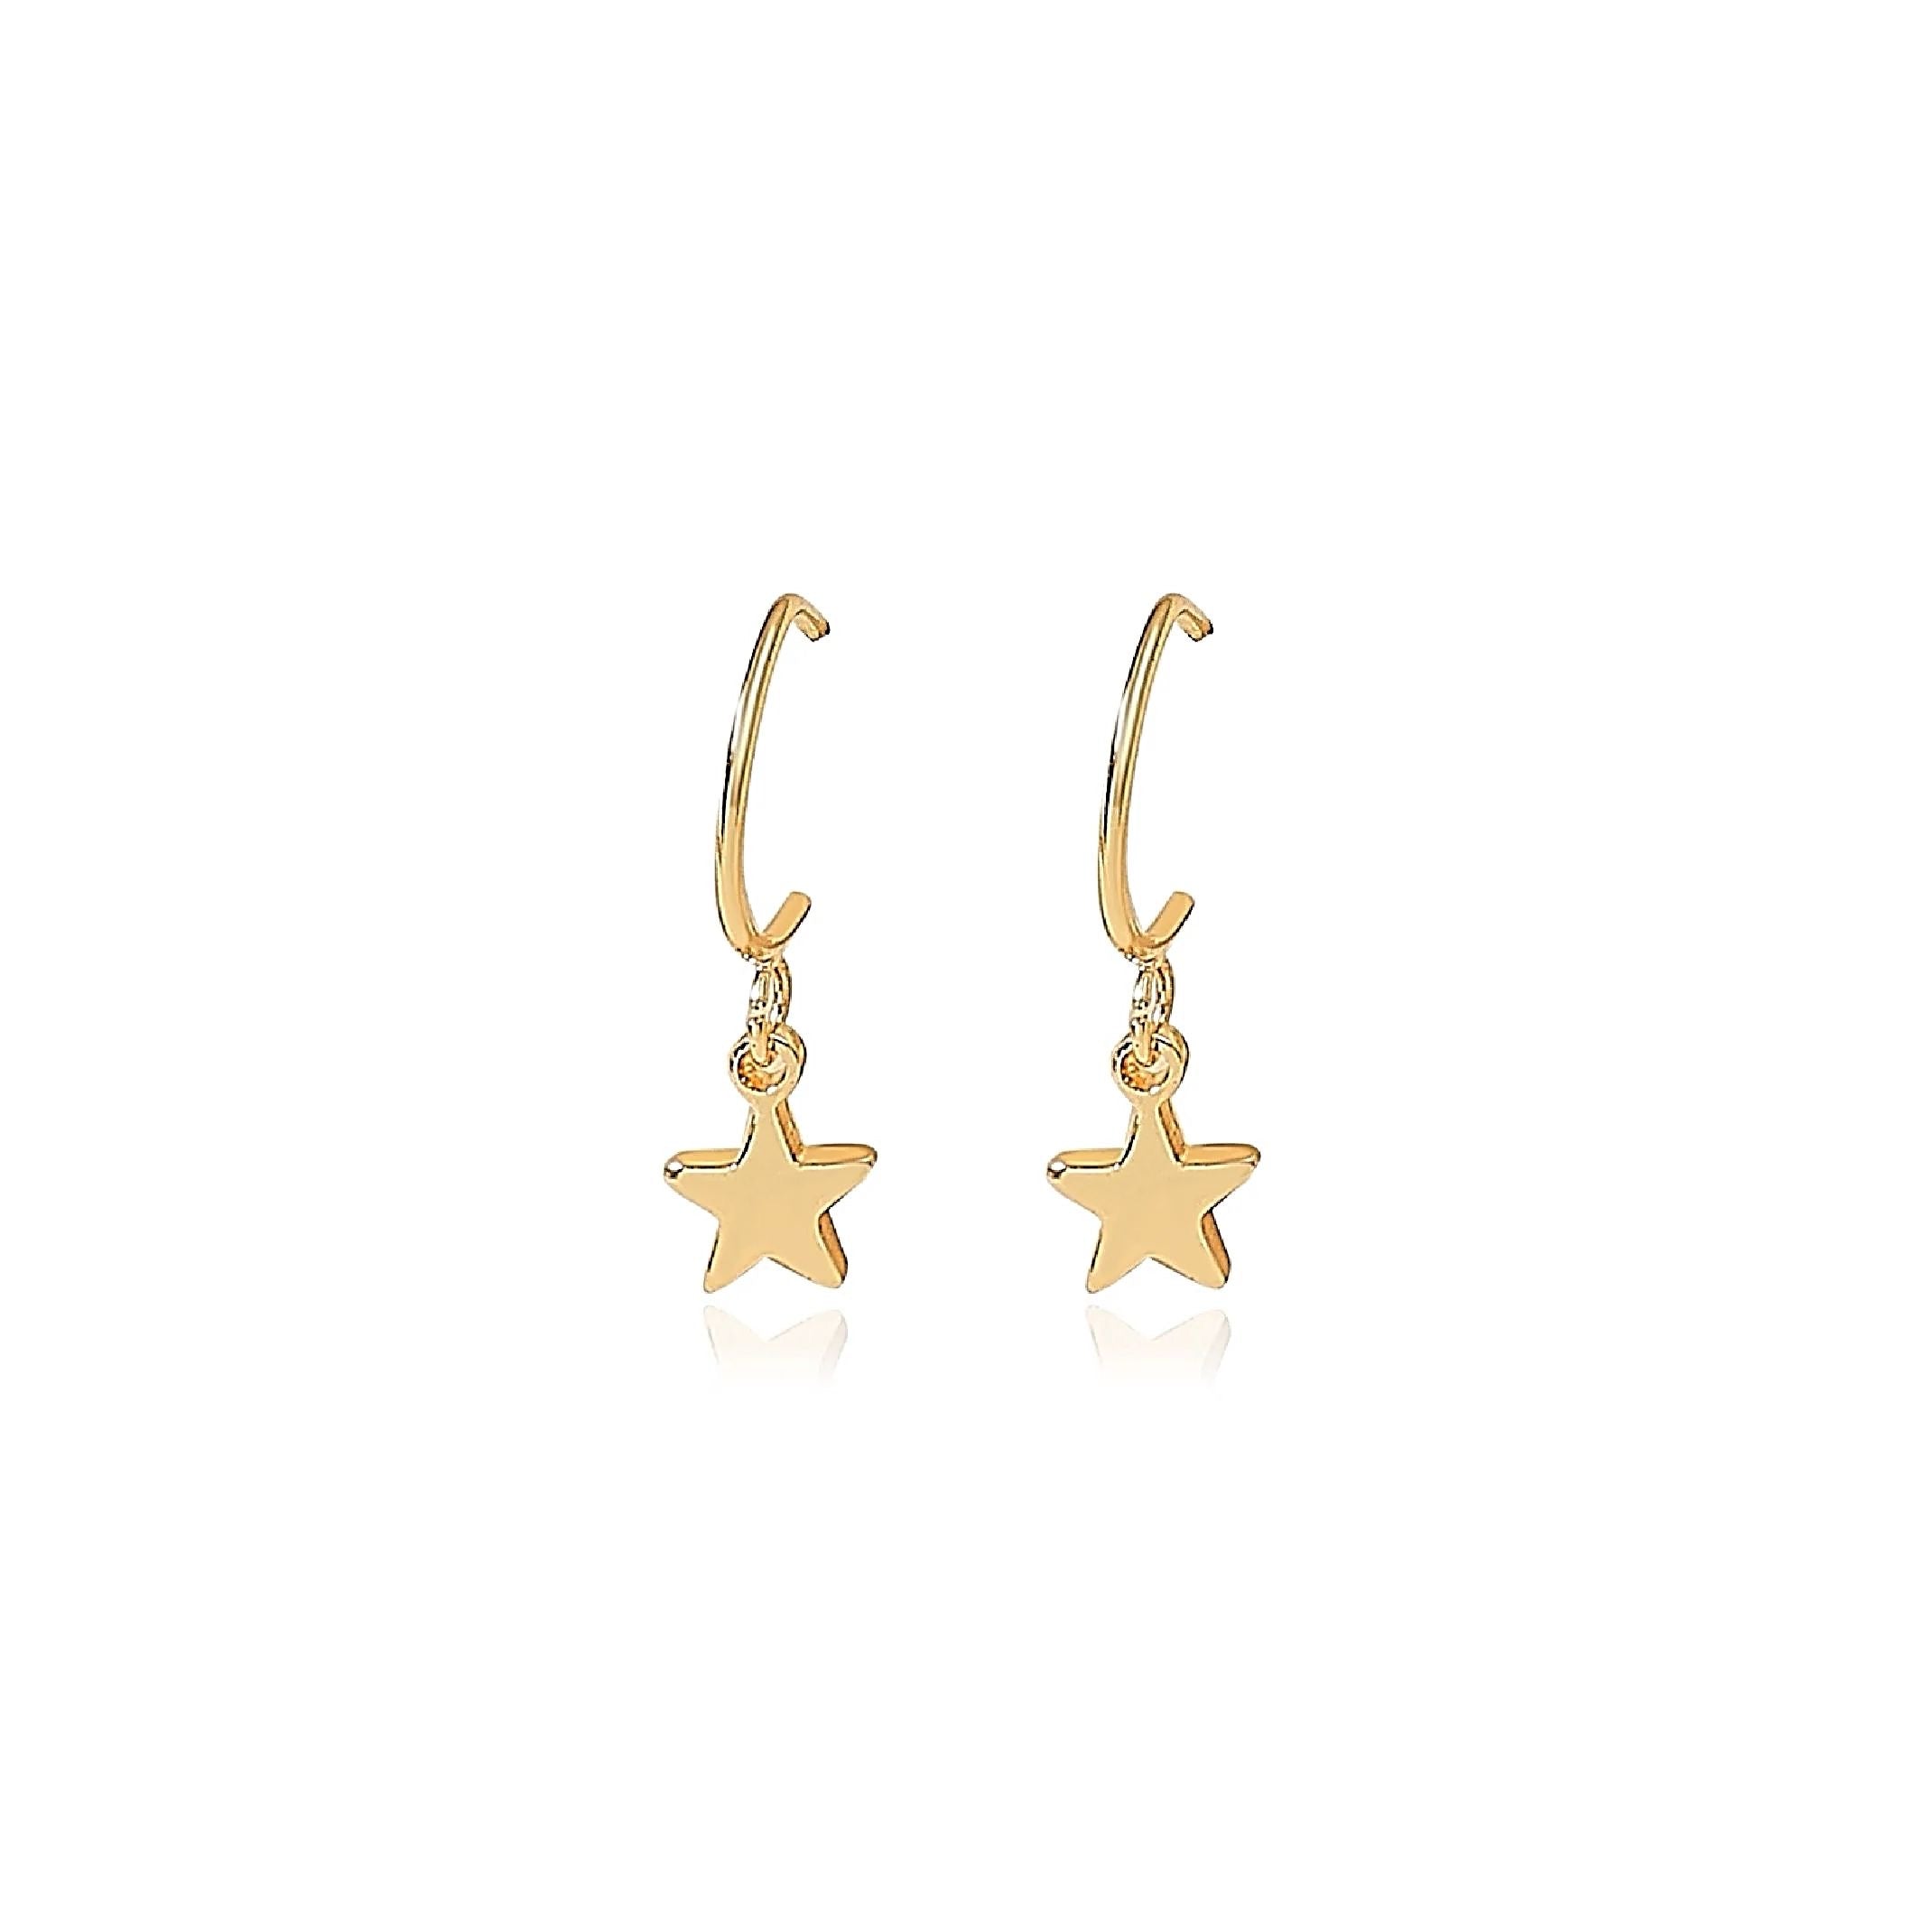 Gold star earrings 